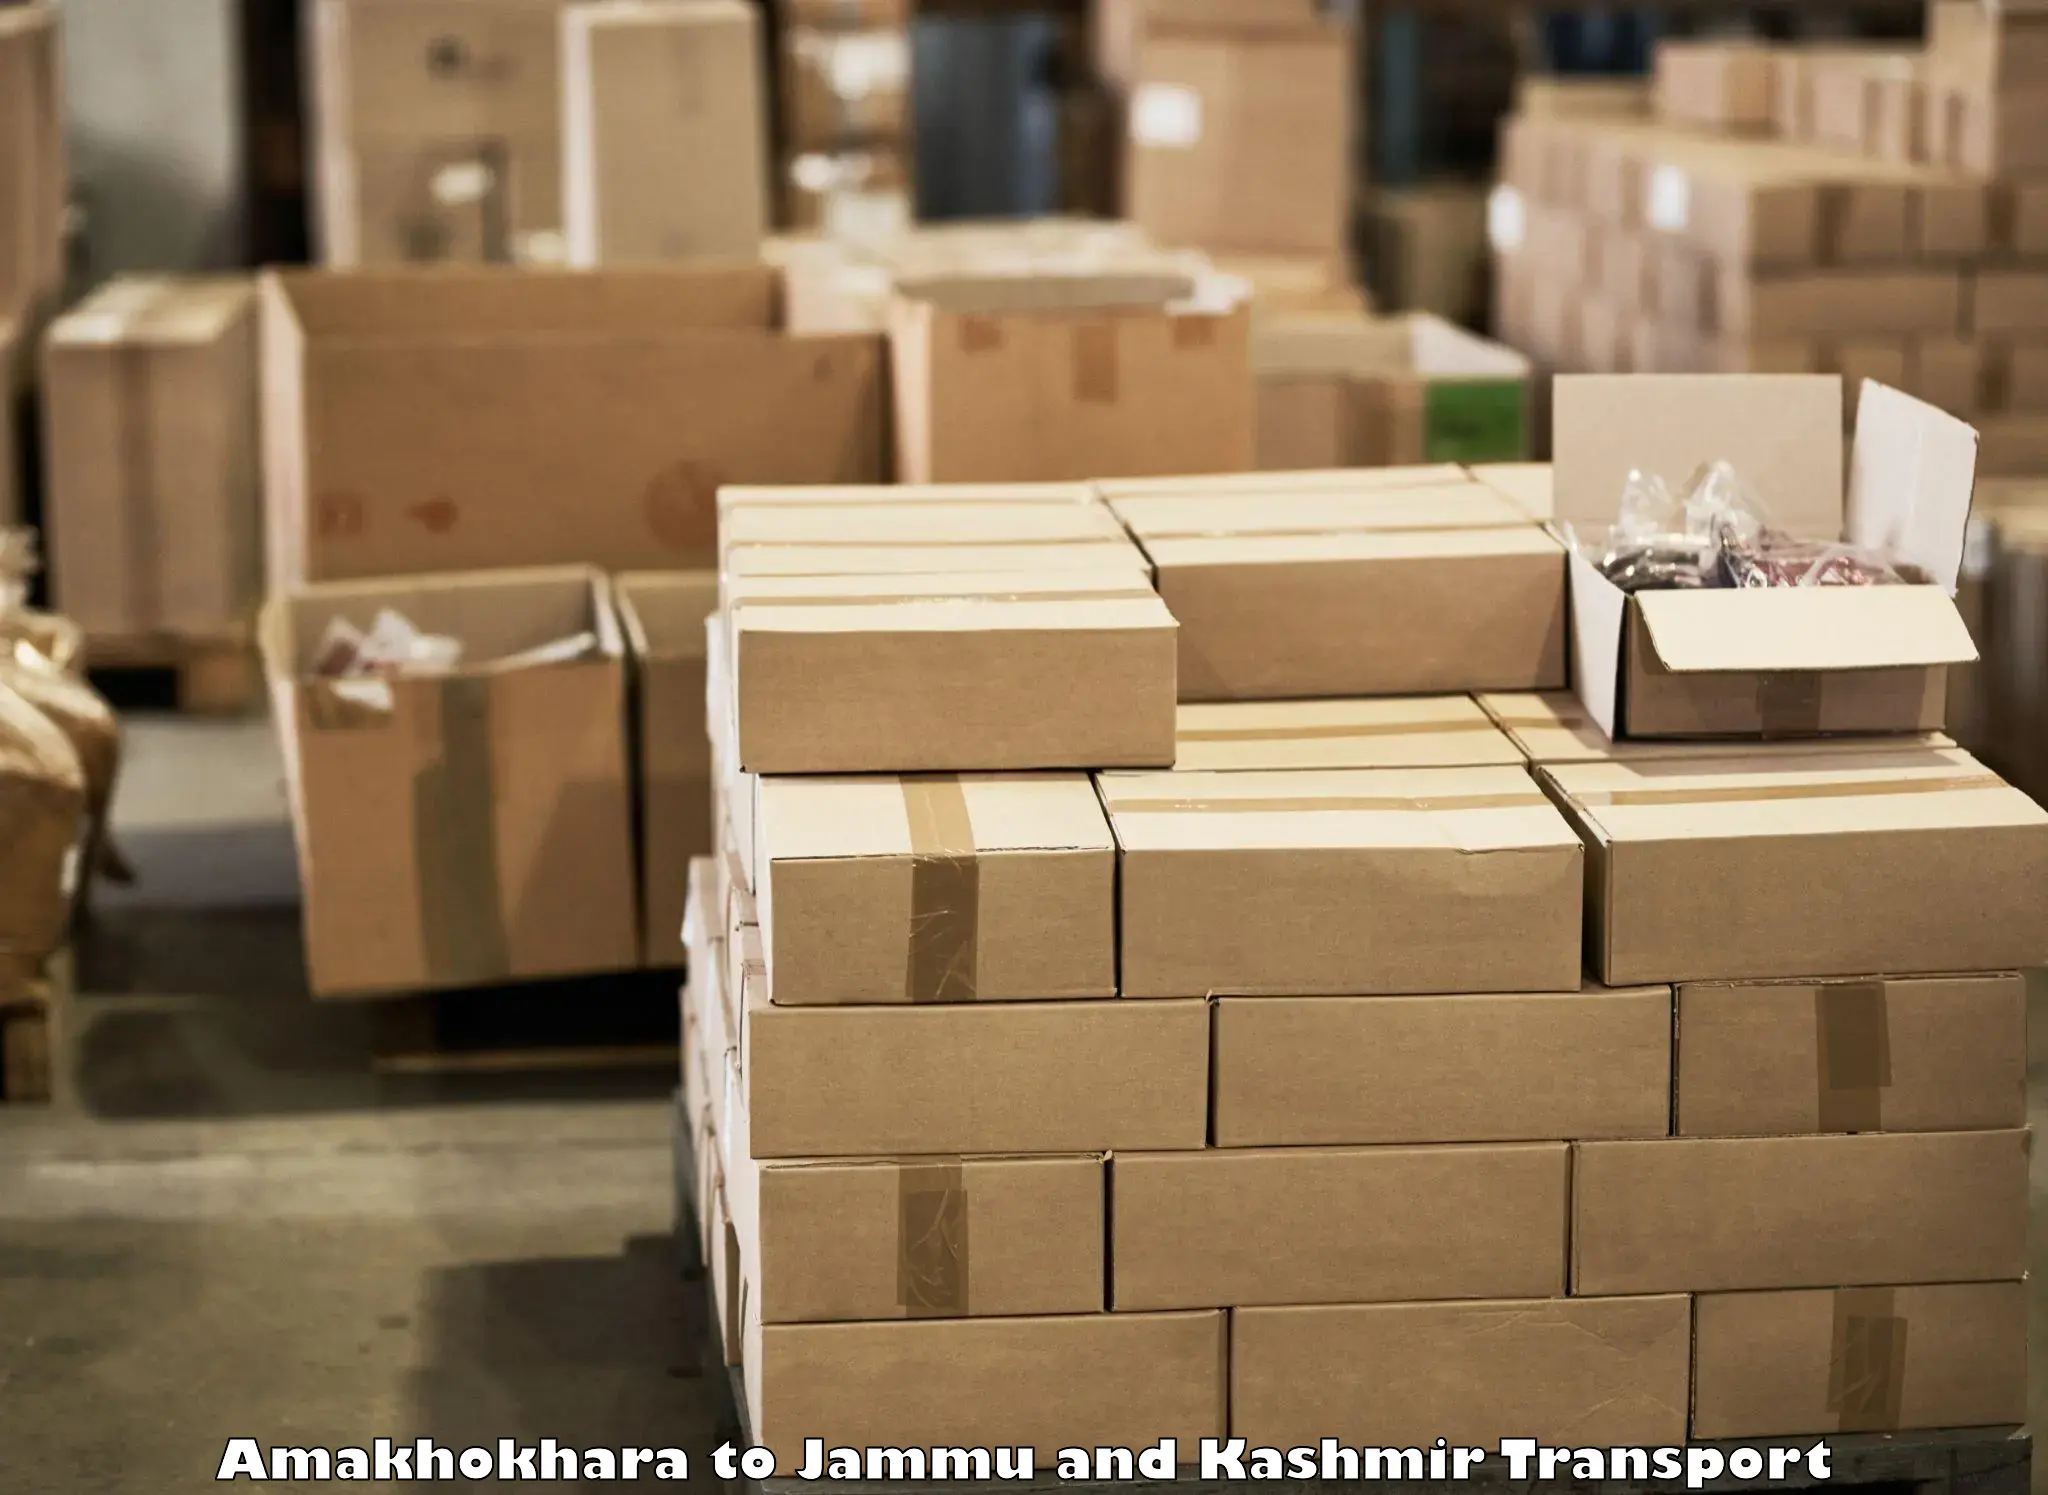 International cargo transportation services Amakhokhara to Kargil